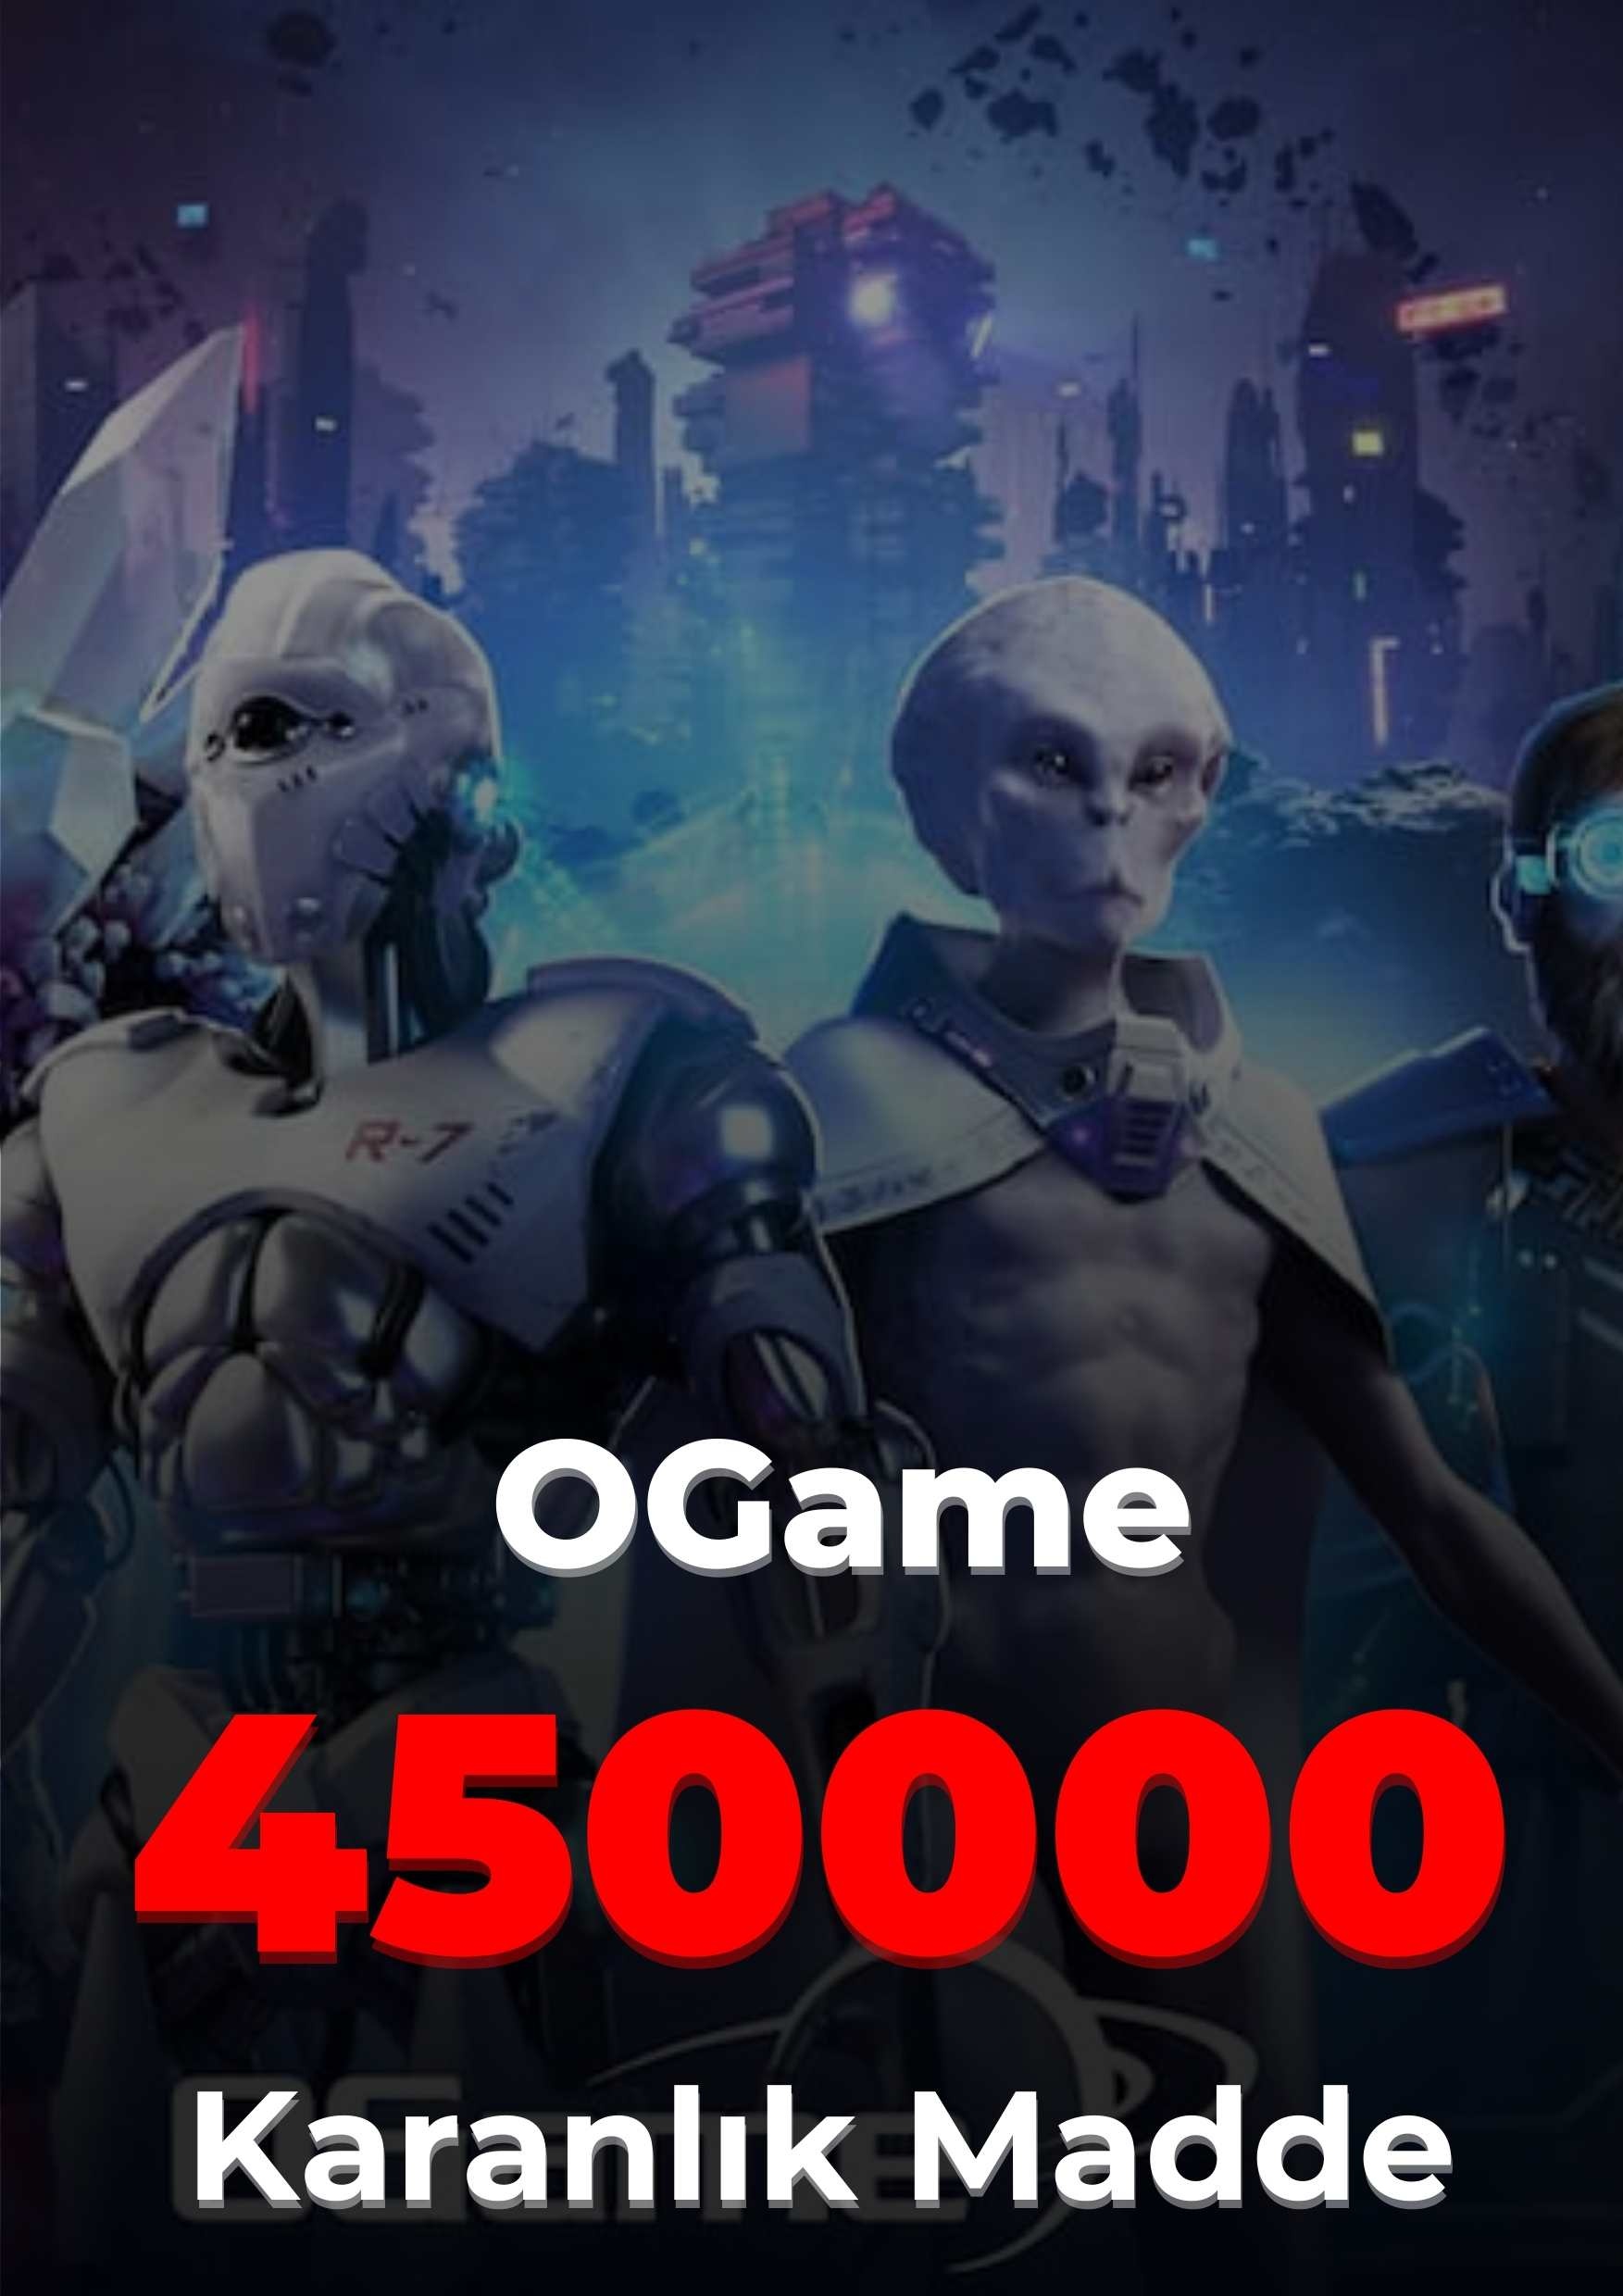 OGame 450000 Karanlık Madde